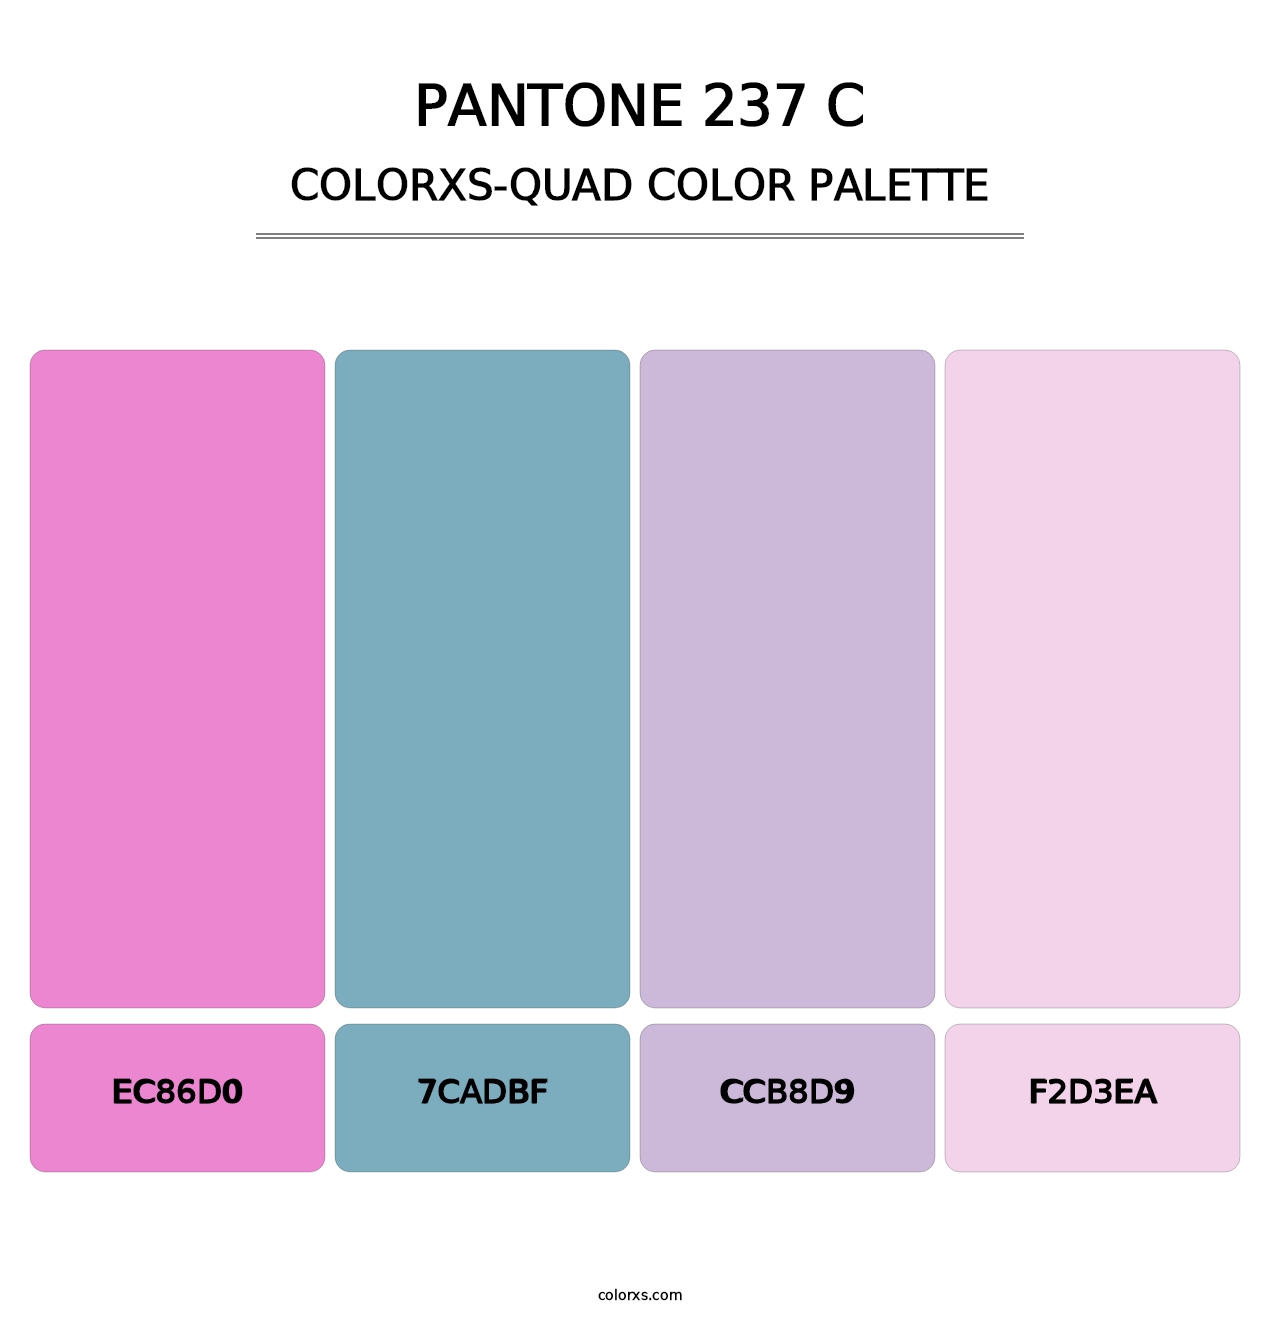 PANTONE 237 C - Colorxs Quad Palette